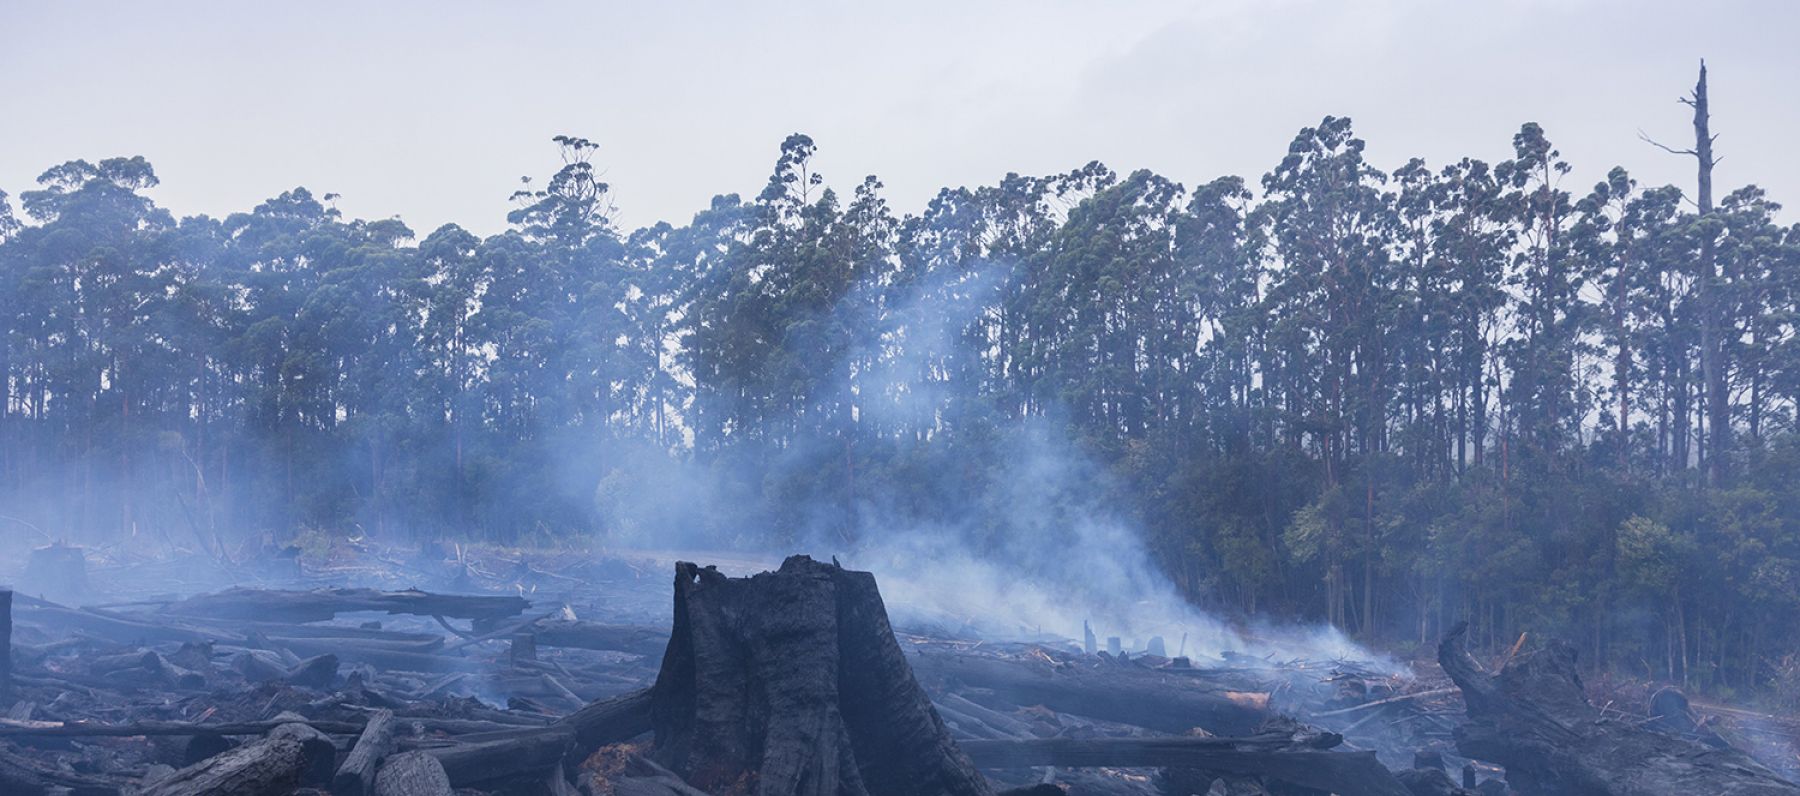 Bushfire disaster in Australia